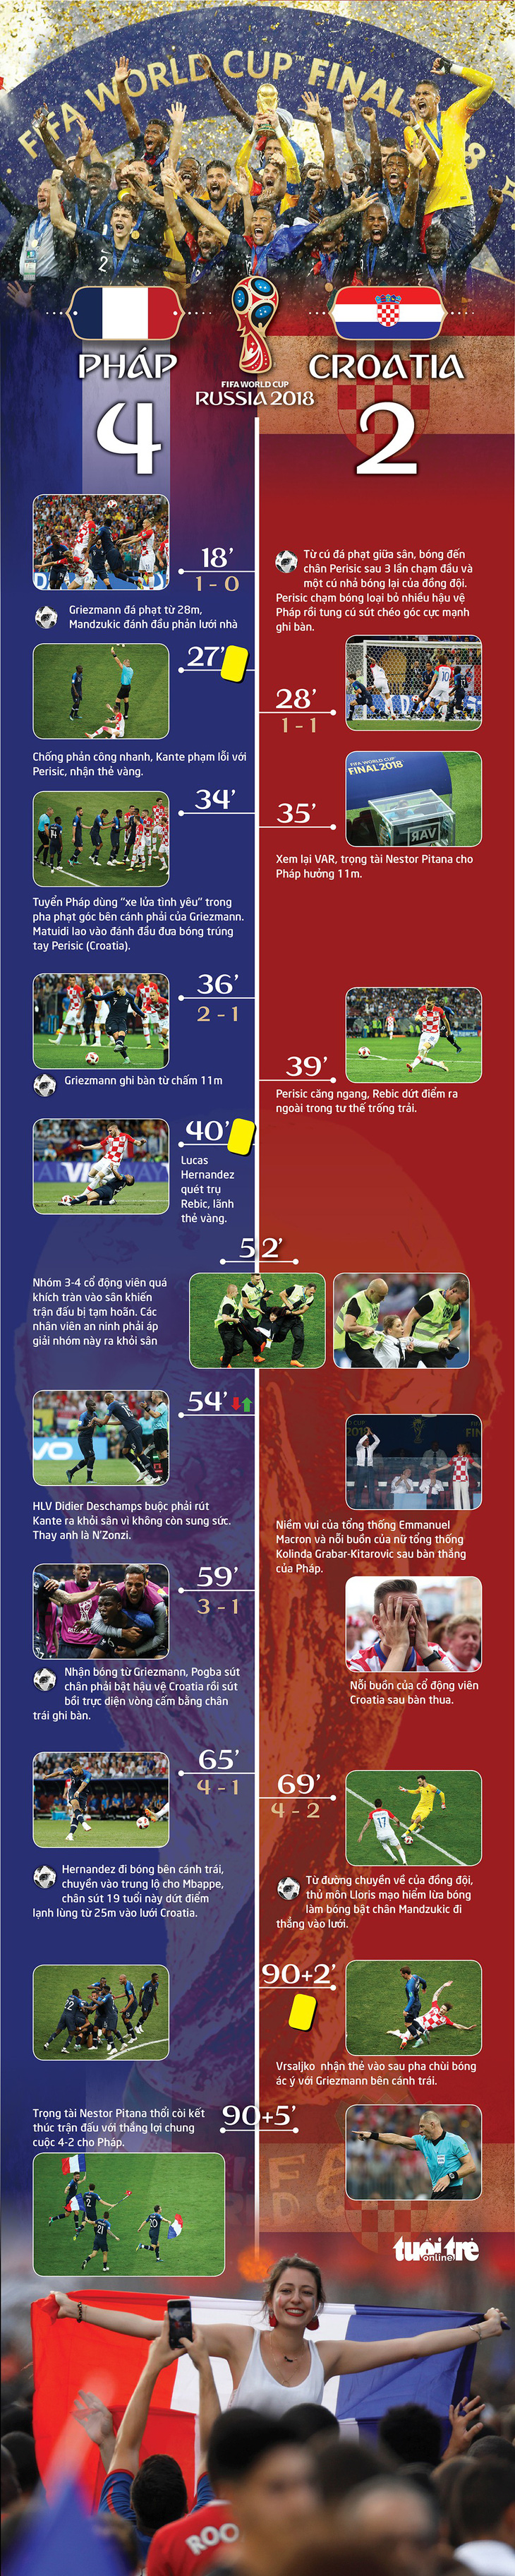 Những sự kiện chính của trận chung kết World Cup 2018 - Ảnh 1.